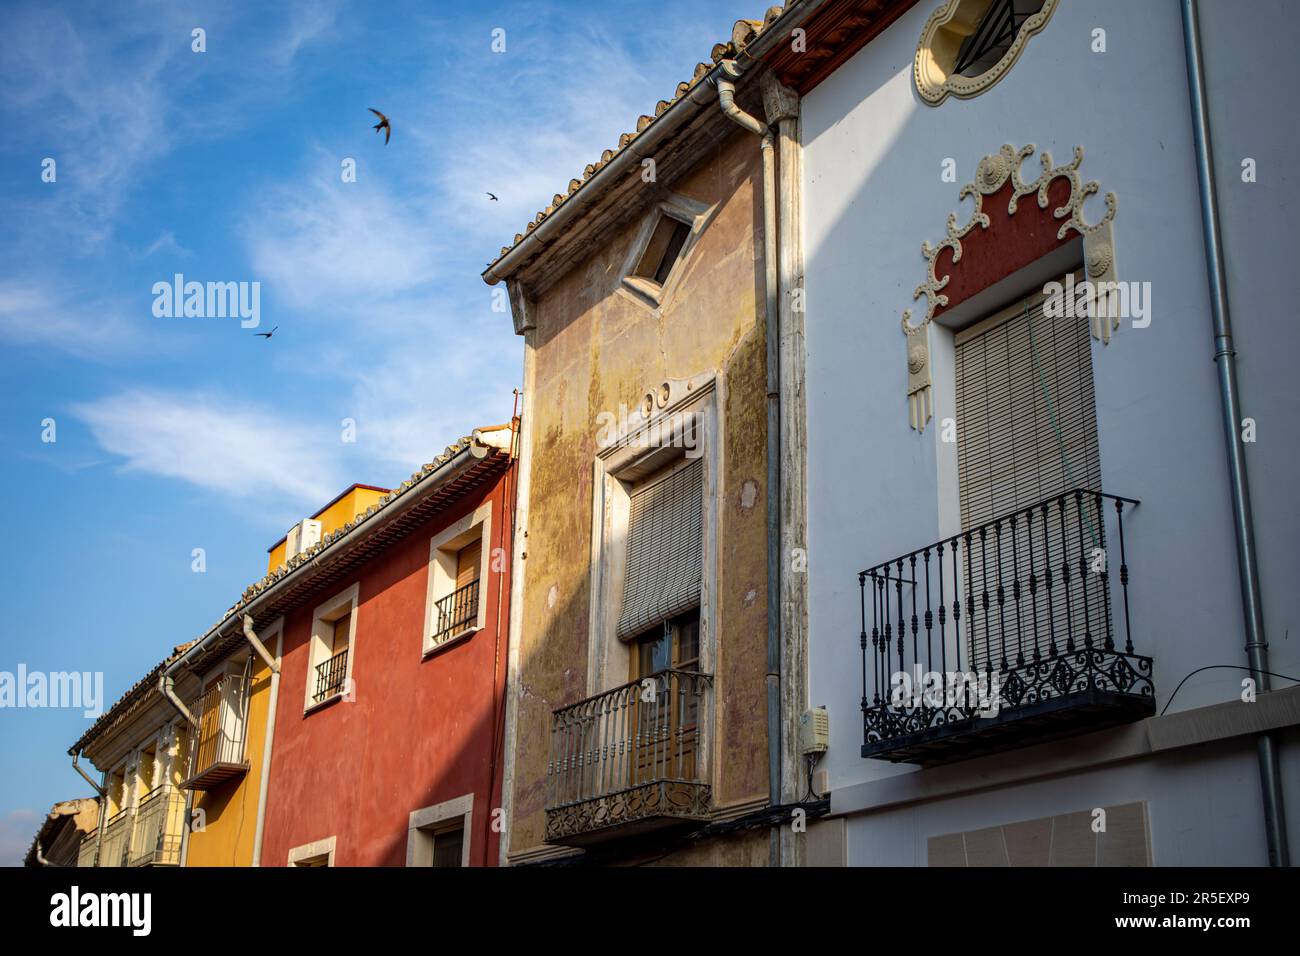 Façades de maisons colorées typiques dans le centre historique de Caravaca de la Cruz, à Murcie, en Espagne, avec des hirondelles volant dans le ciel bleu Banque D'Images